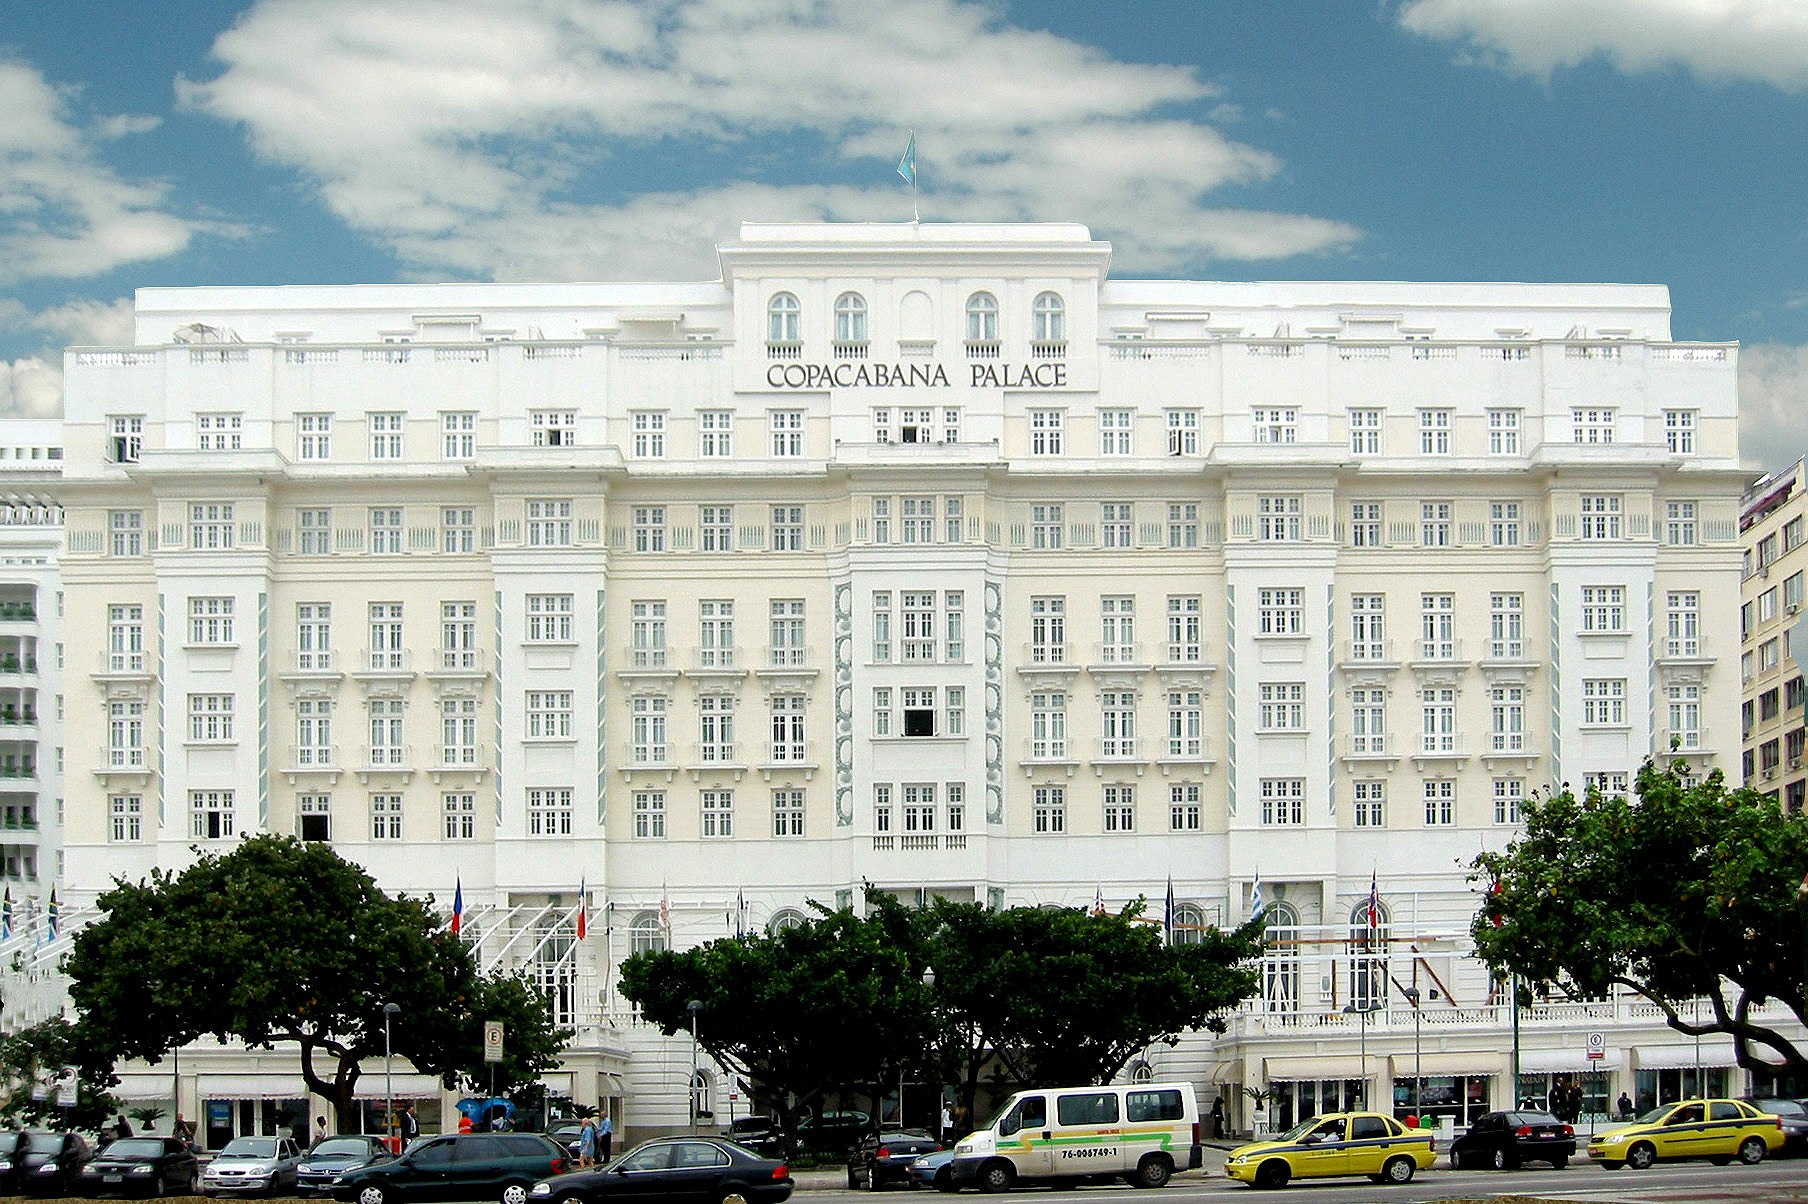  Louis Vuitton compra Copacabana Palace